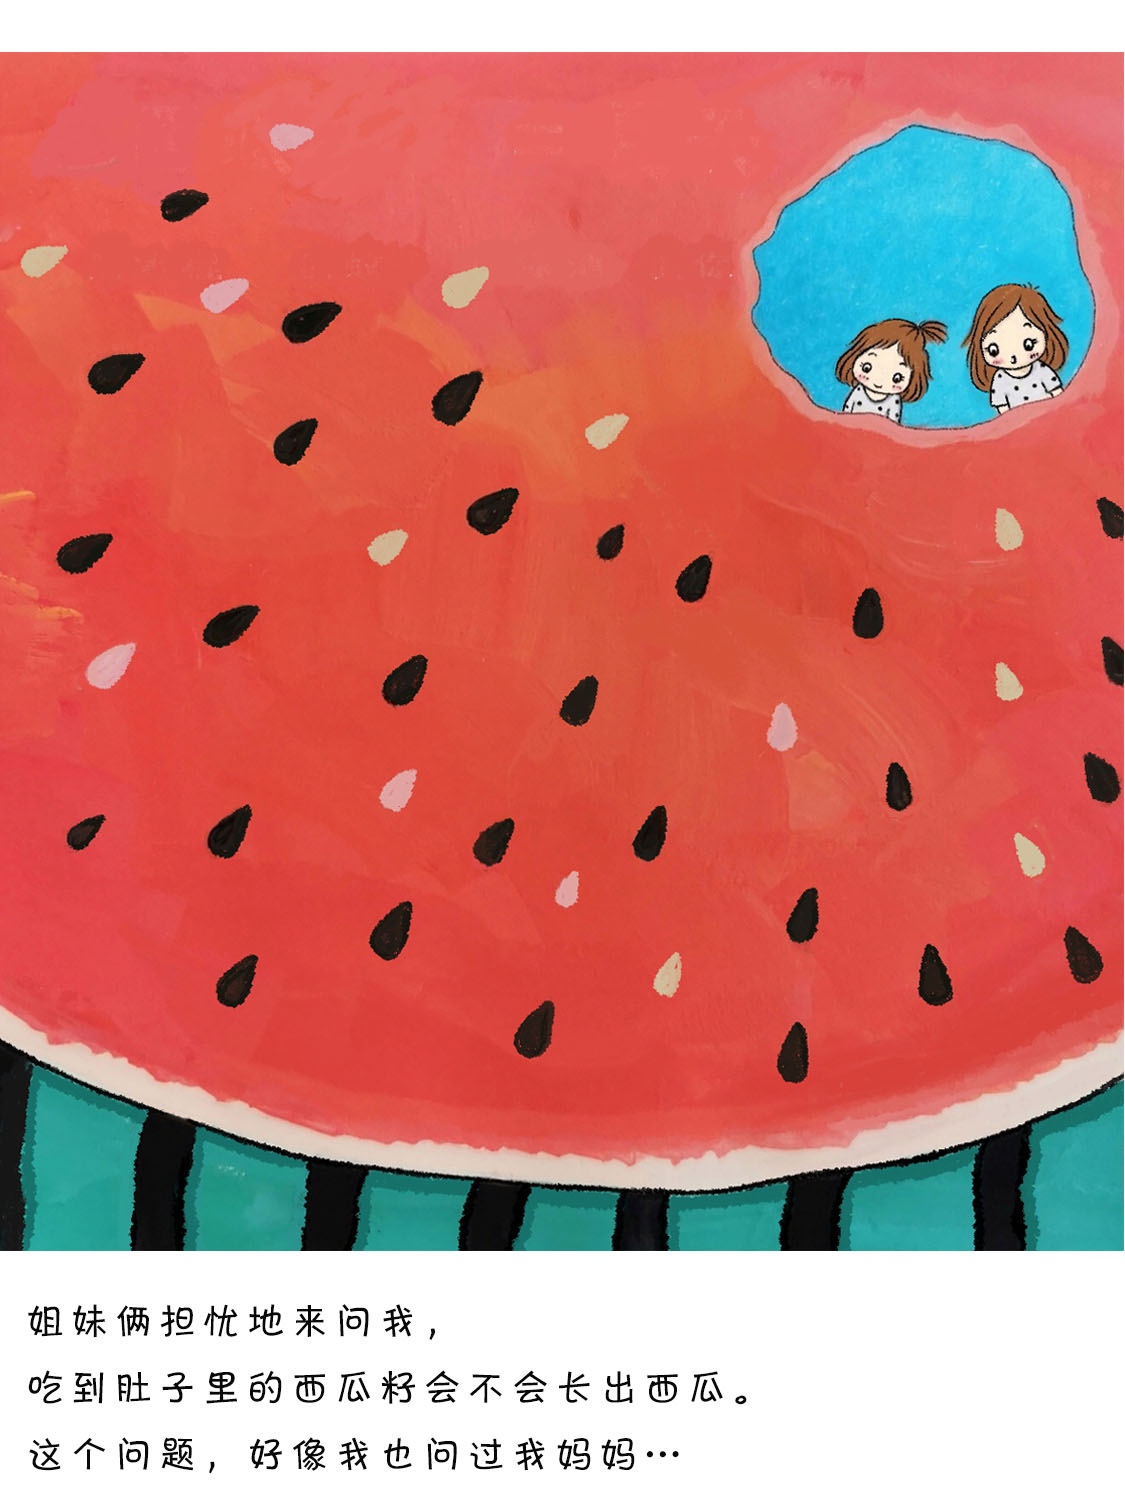 《西瓜籽的困惑》插画图片壁纸